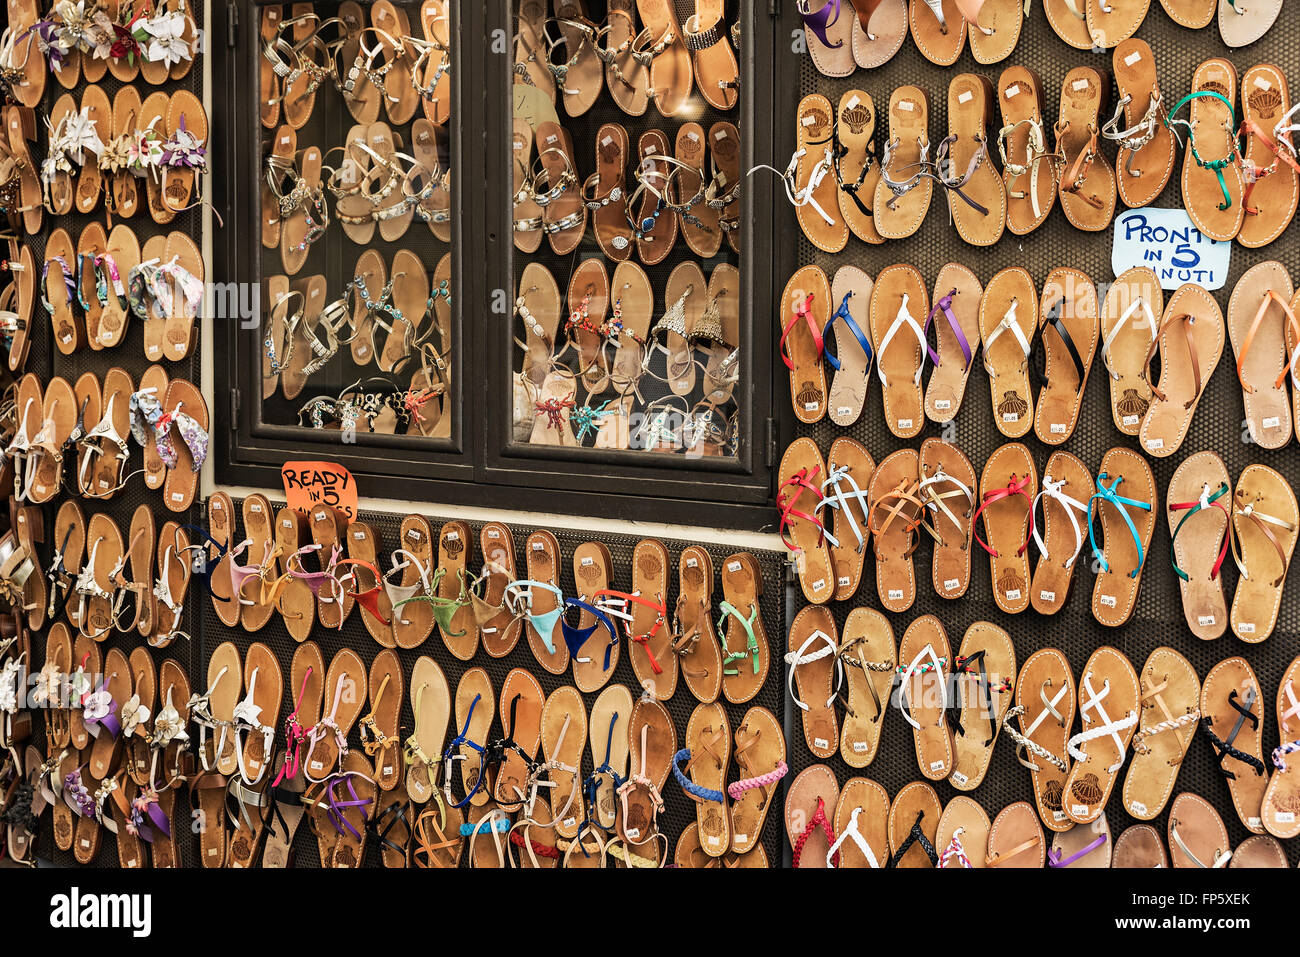 Sandali sul display nel negozio del fornitore, Sorrento, Italia Foto Stock